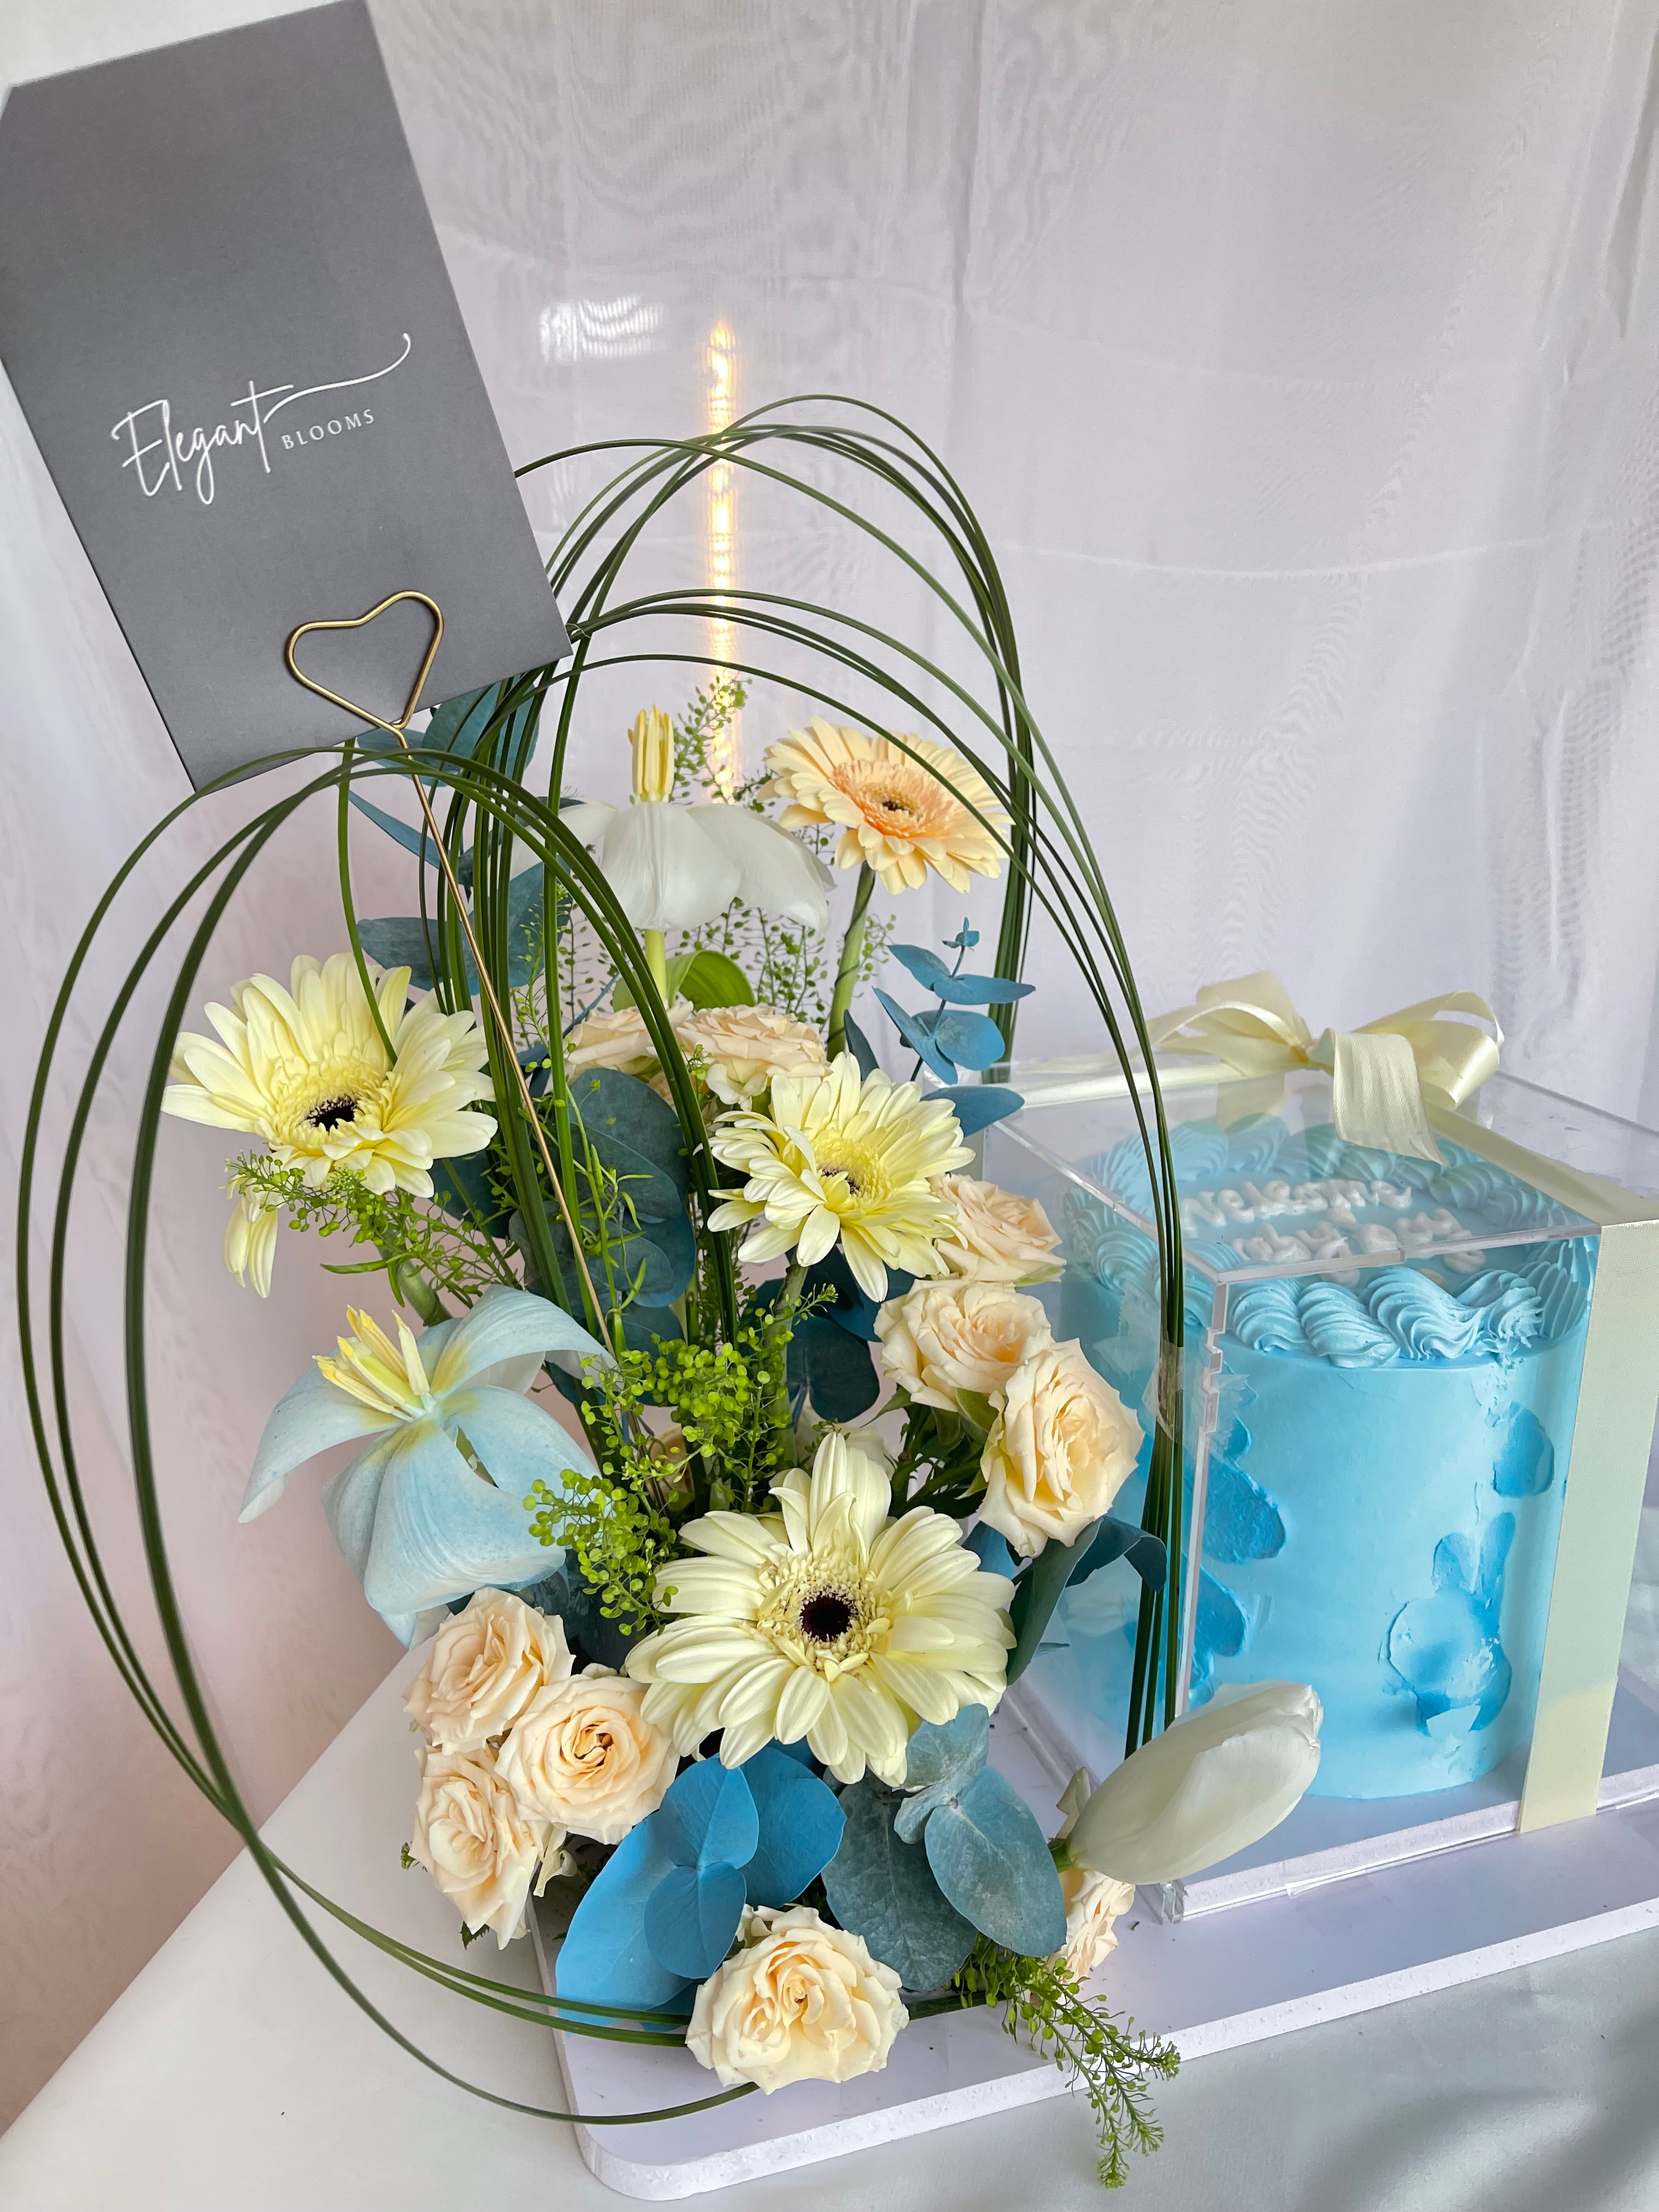 Flowers & cake gift🤍